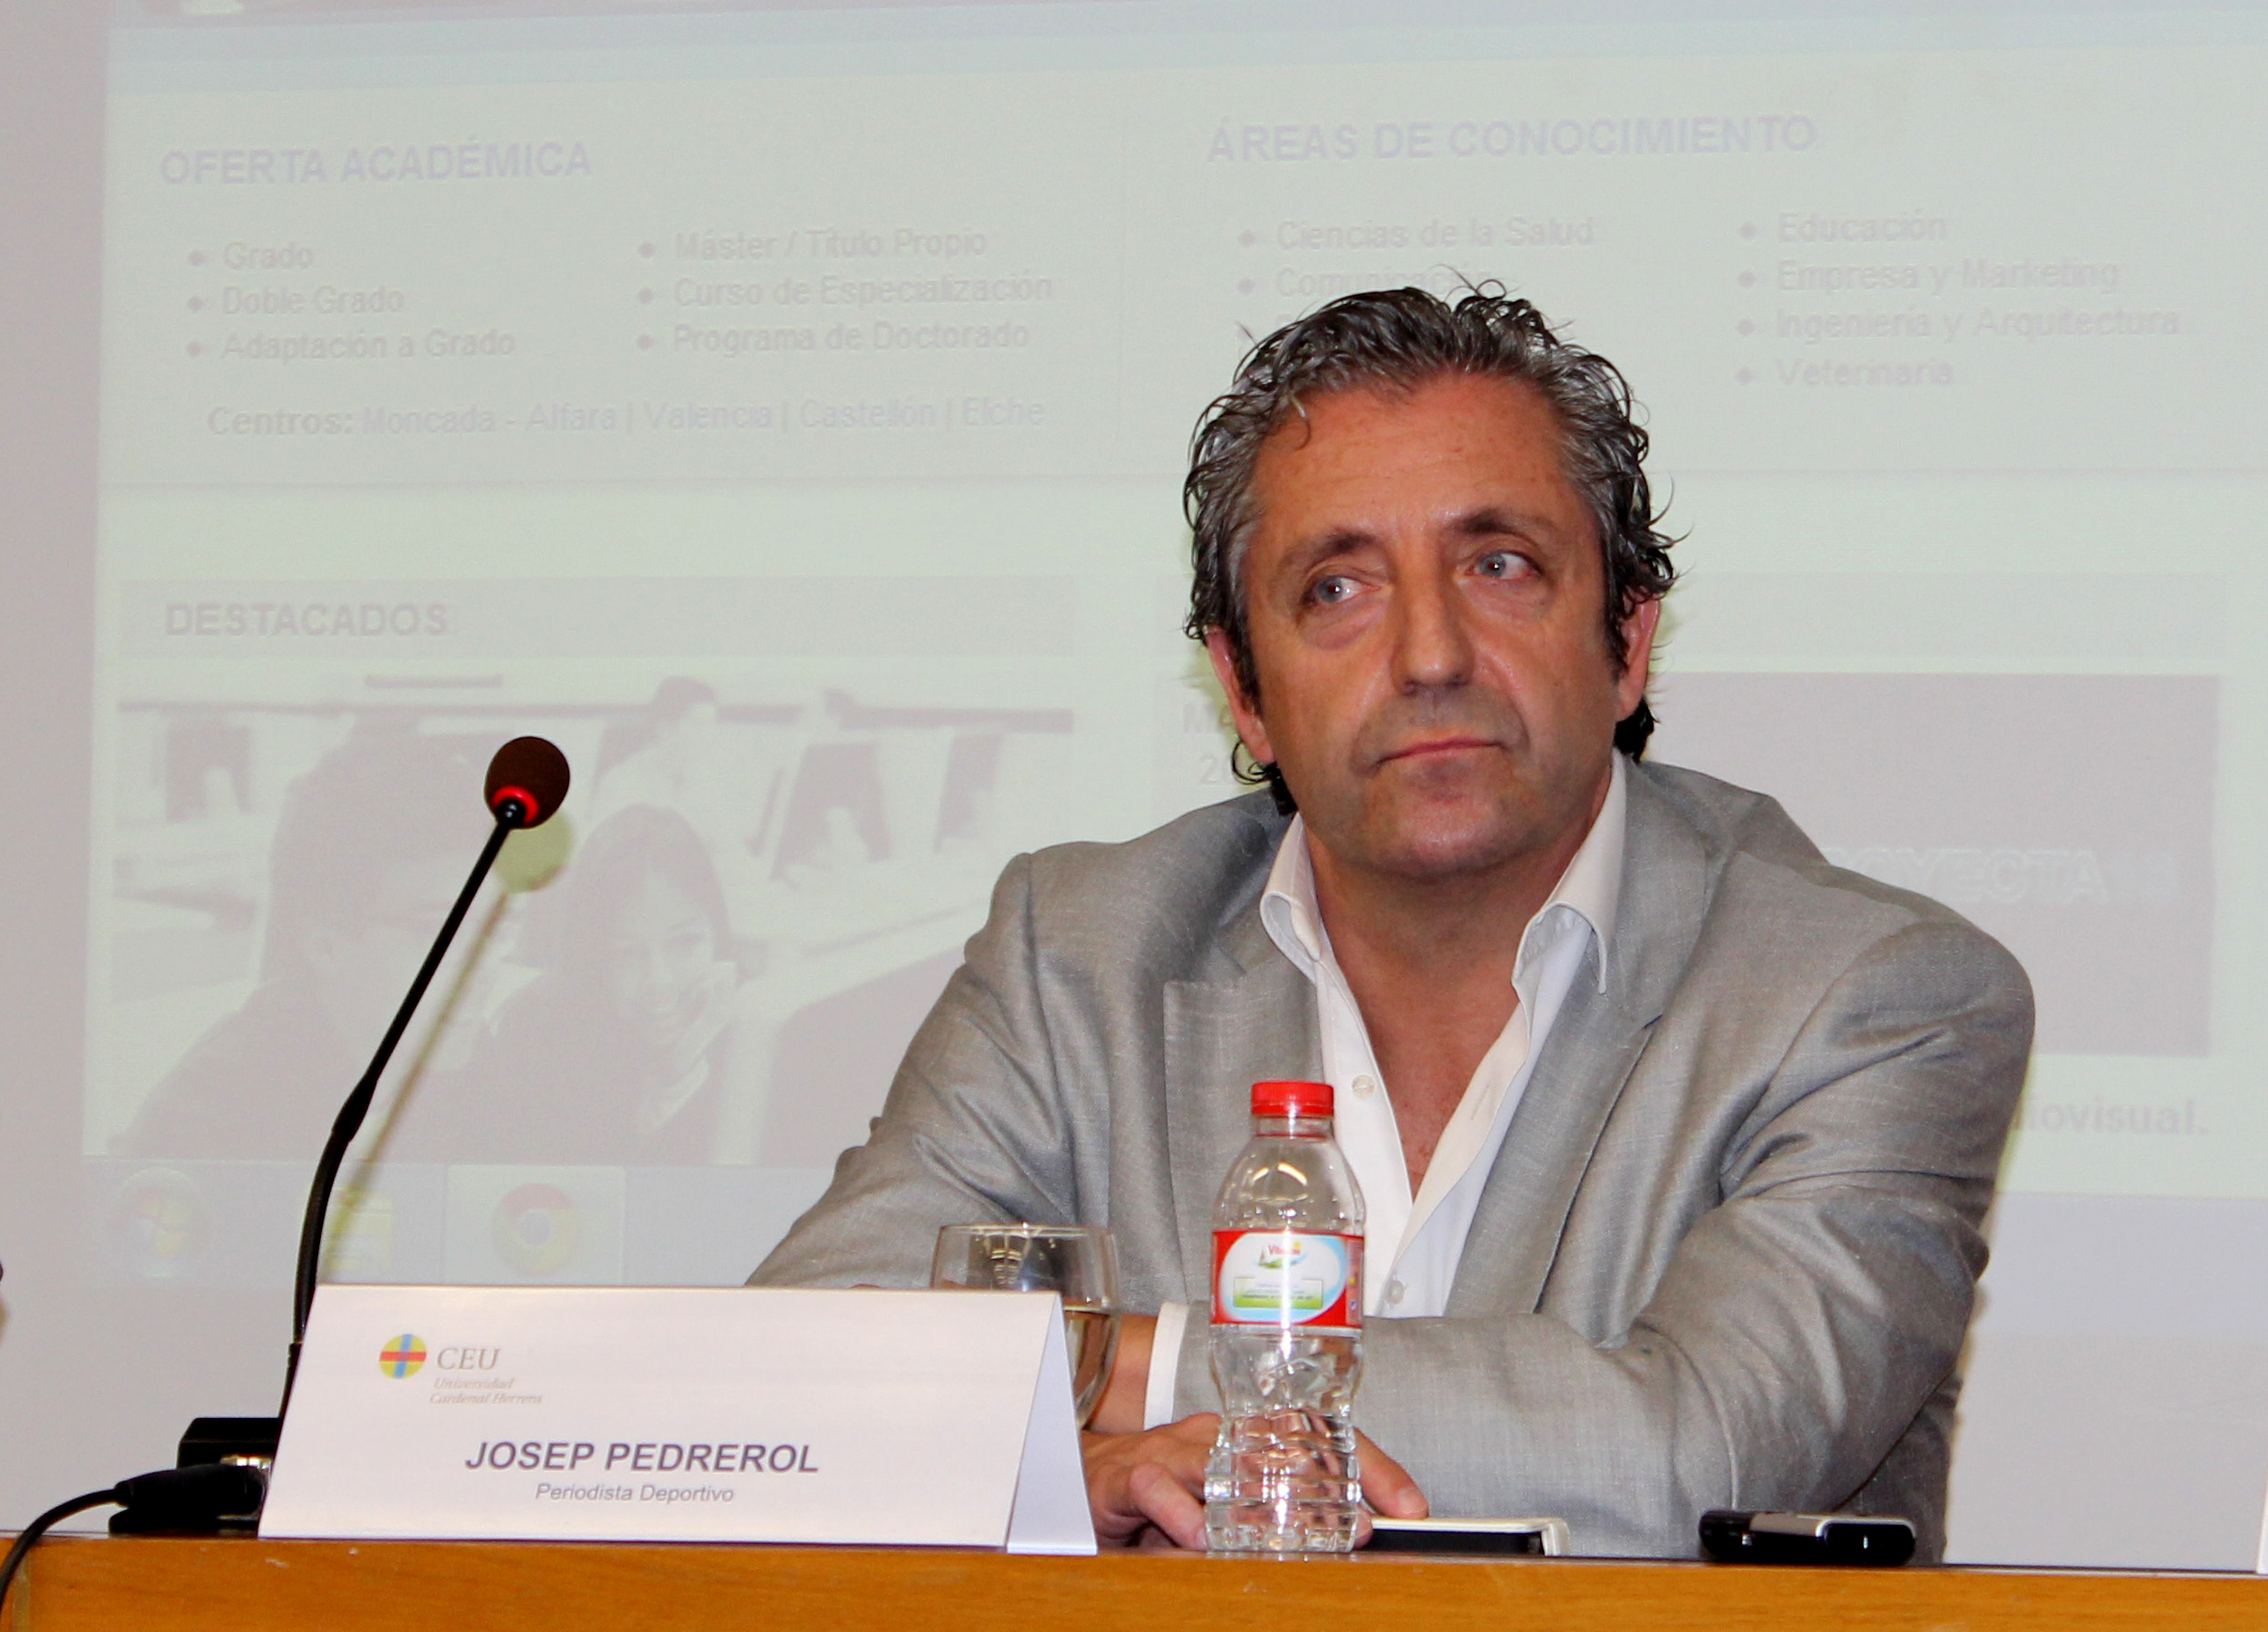 Josep Pedrerol: "No soy objetivo ni imparcial, pero sí honesto"